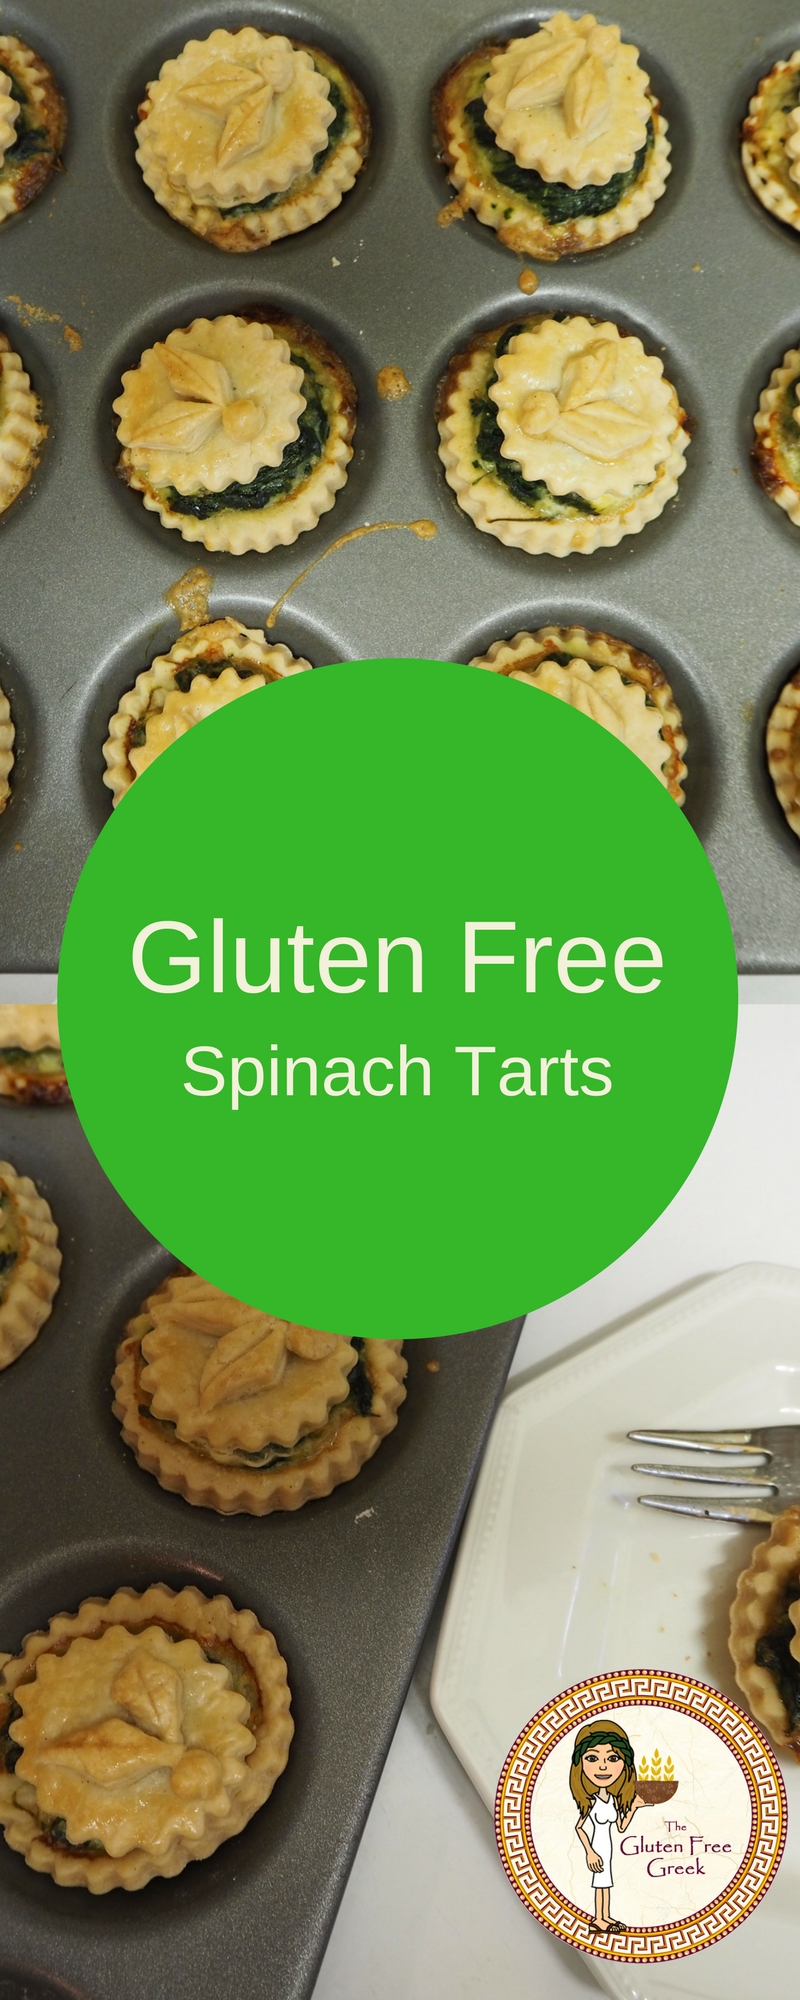 Gluten Free Spinach Tarts Pinterest